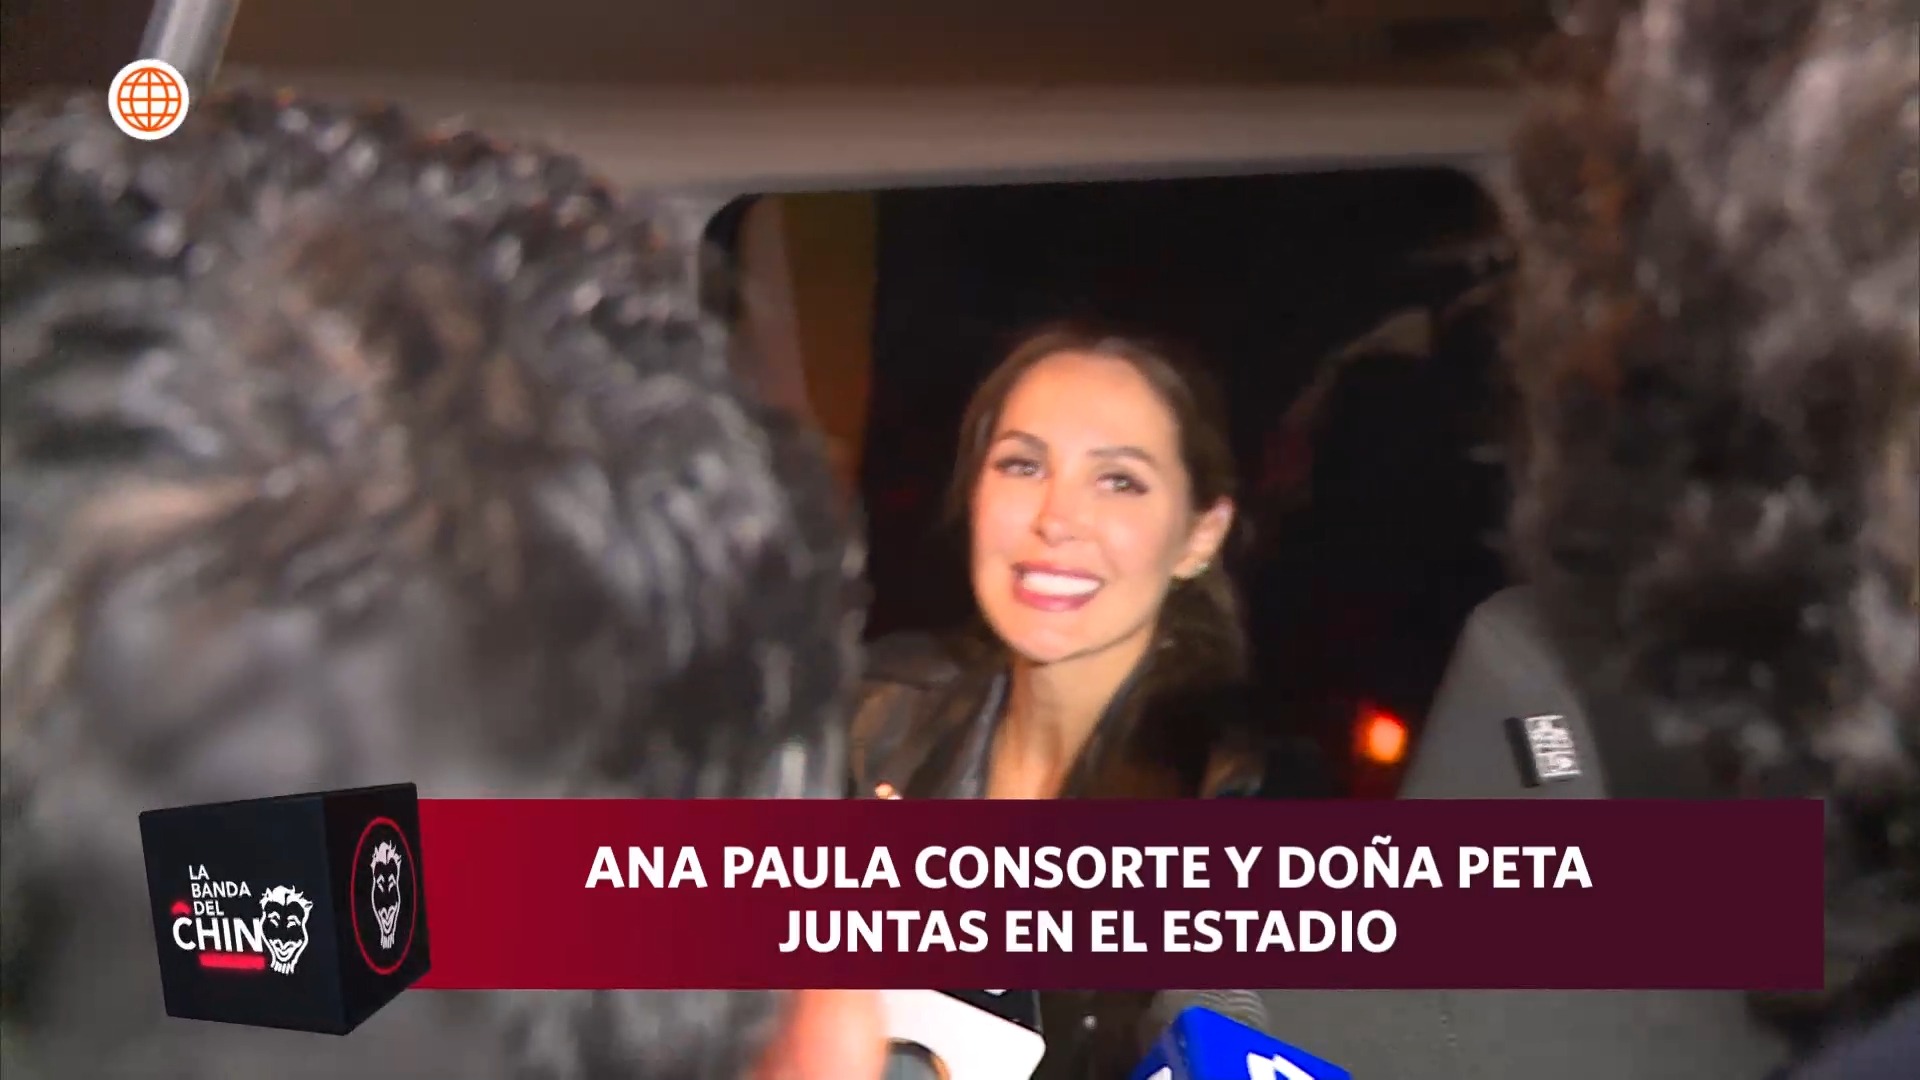 Ana Paula Consorte fue entrevistada en el programa 'La Banda del Chino'/Foto: 'La Banda del Chino'